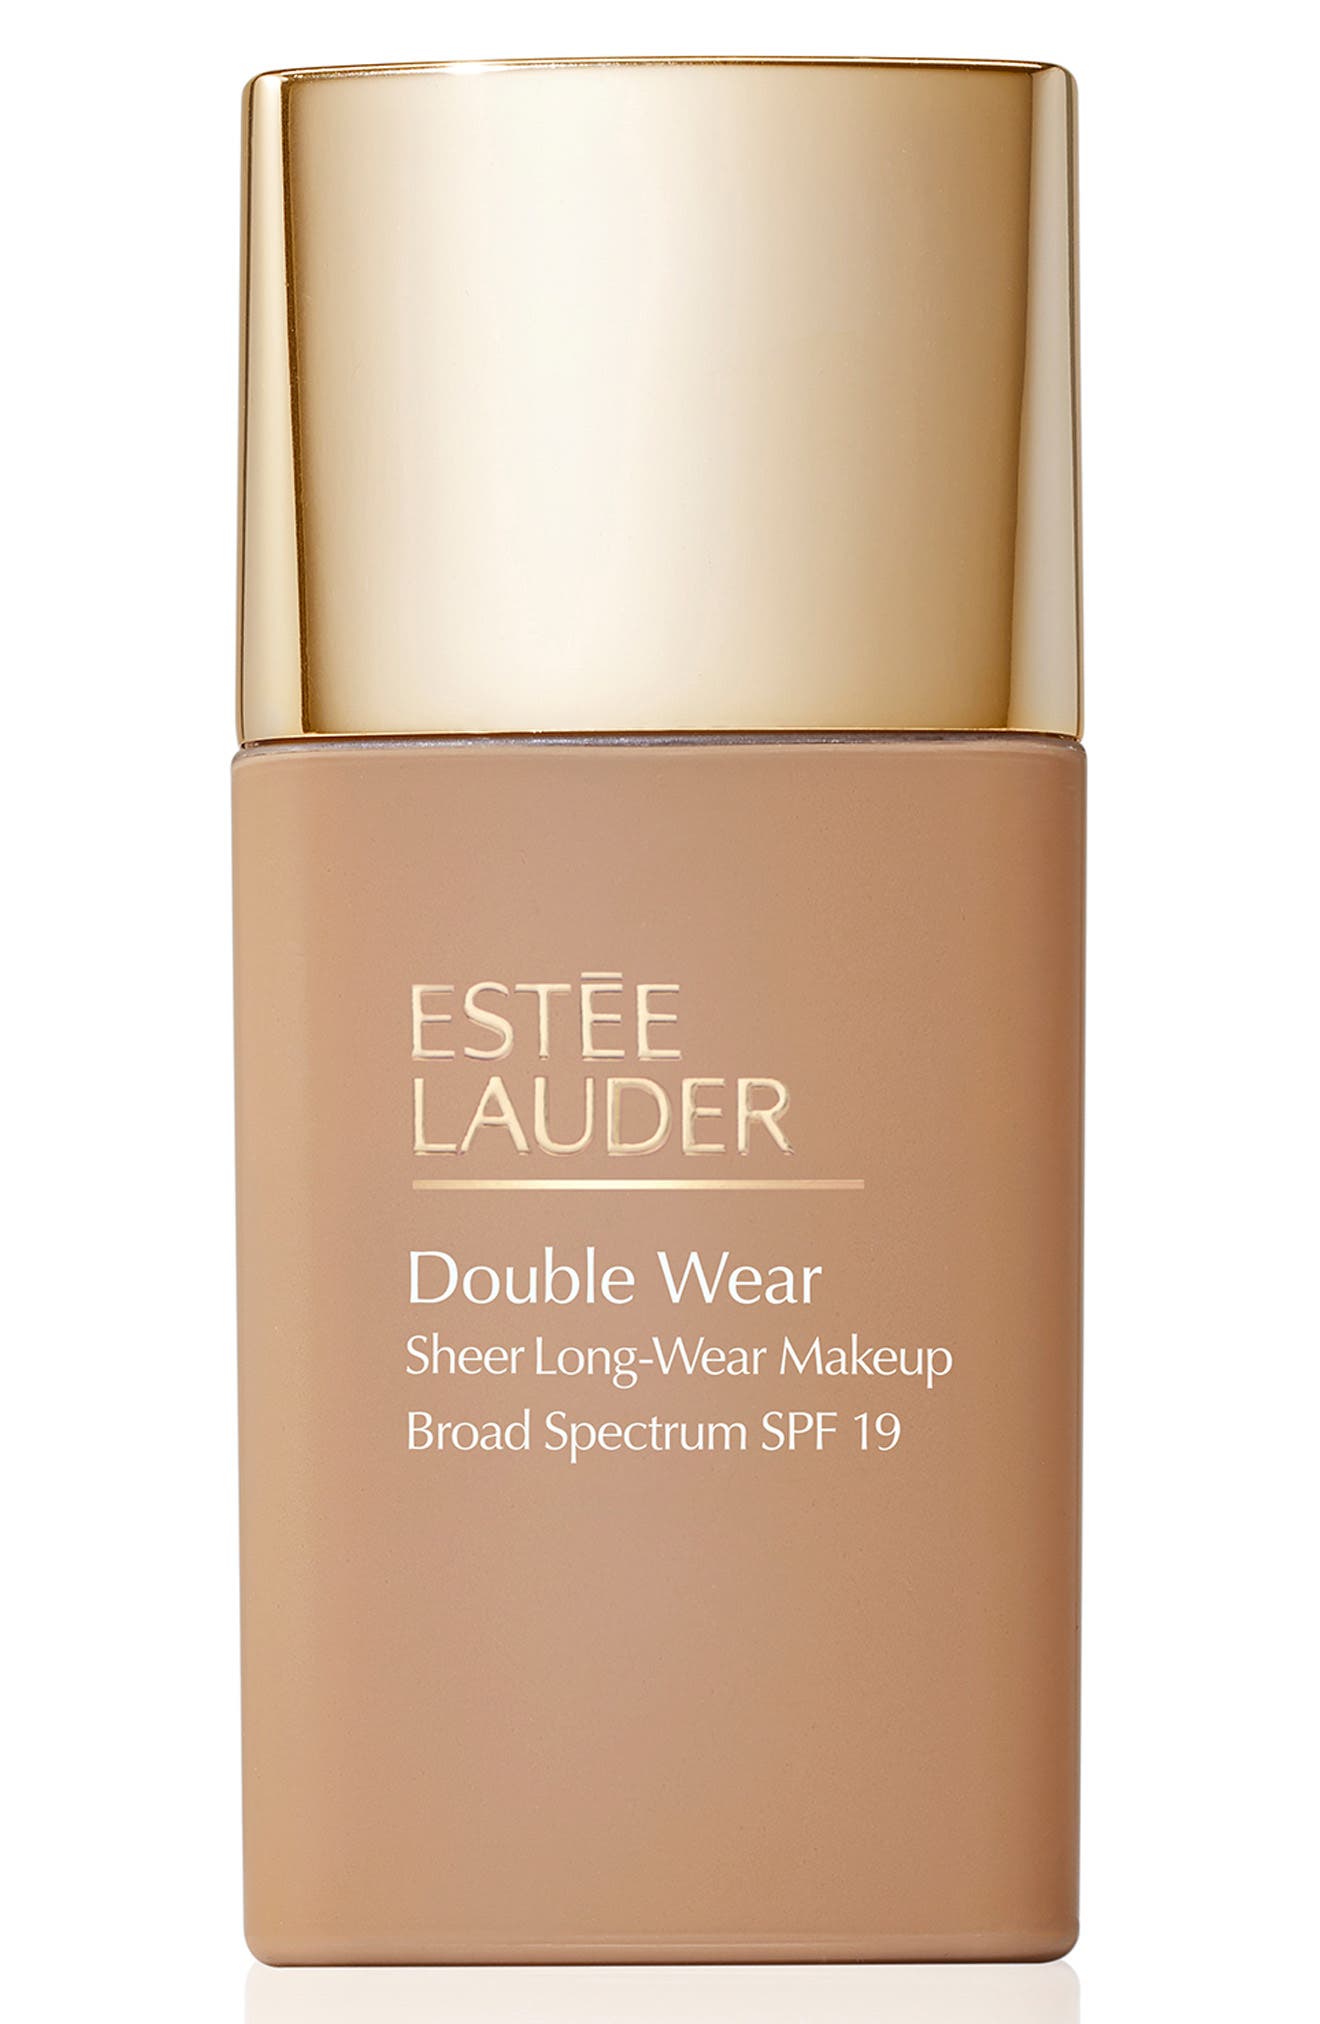 Estee Lauder Double Wear Sheer Long-Wear Foundation SPF 19